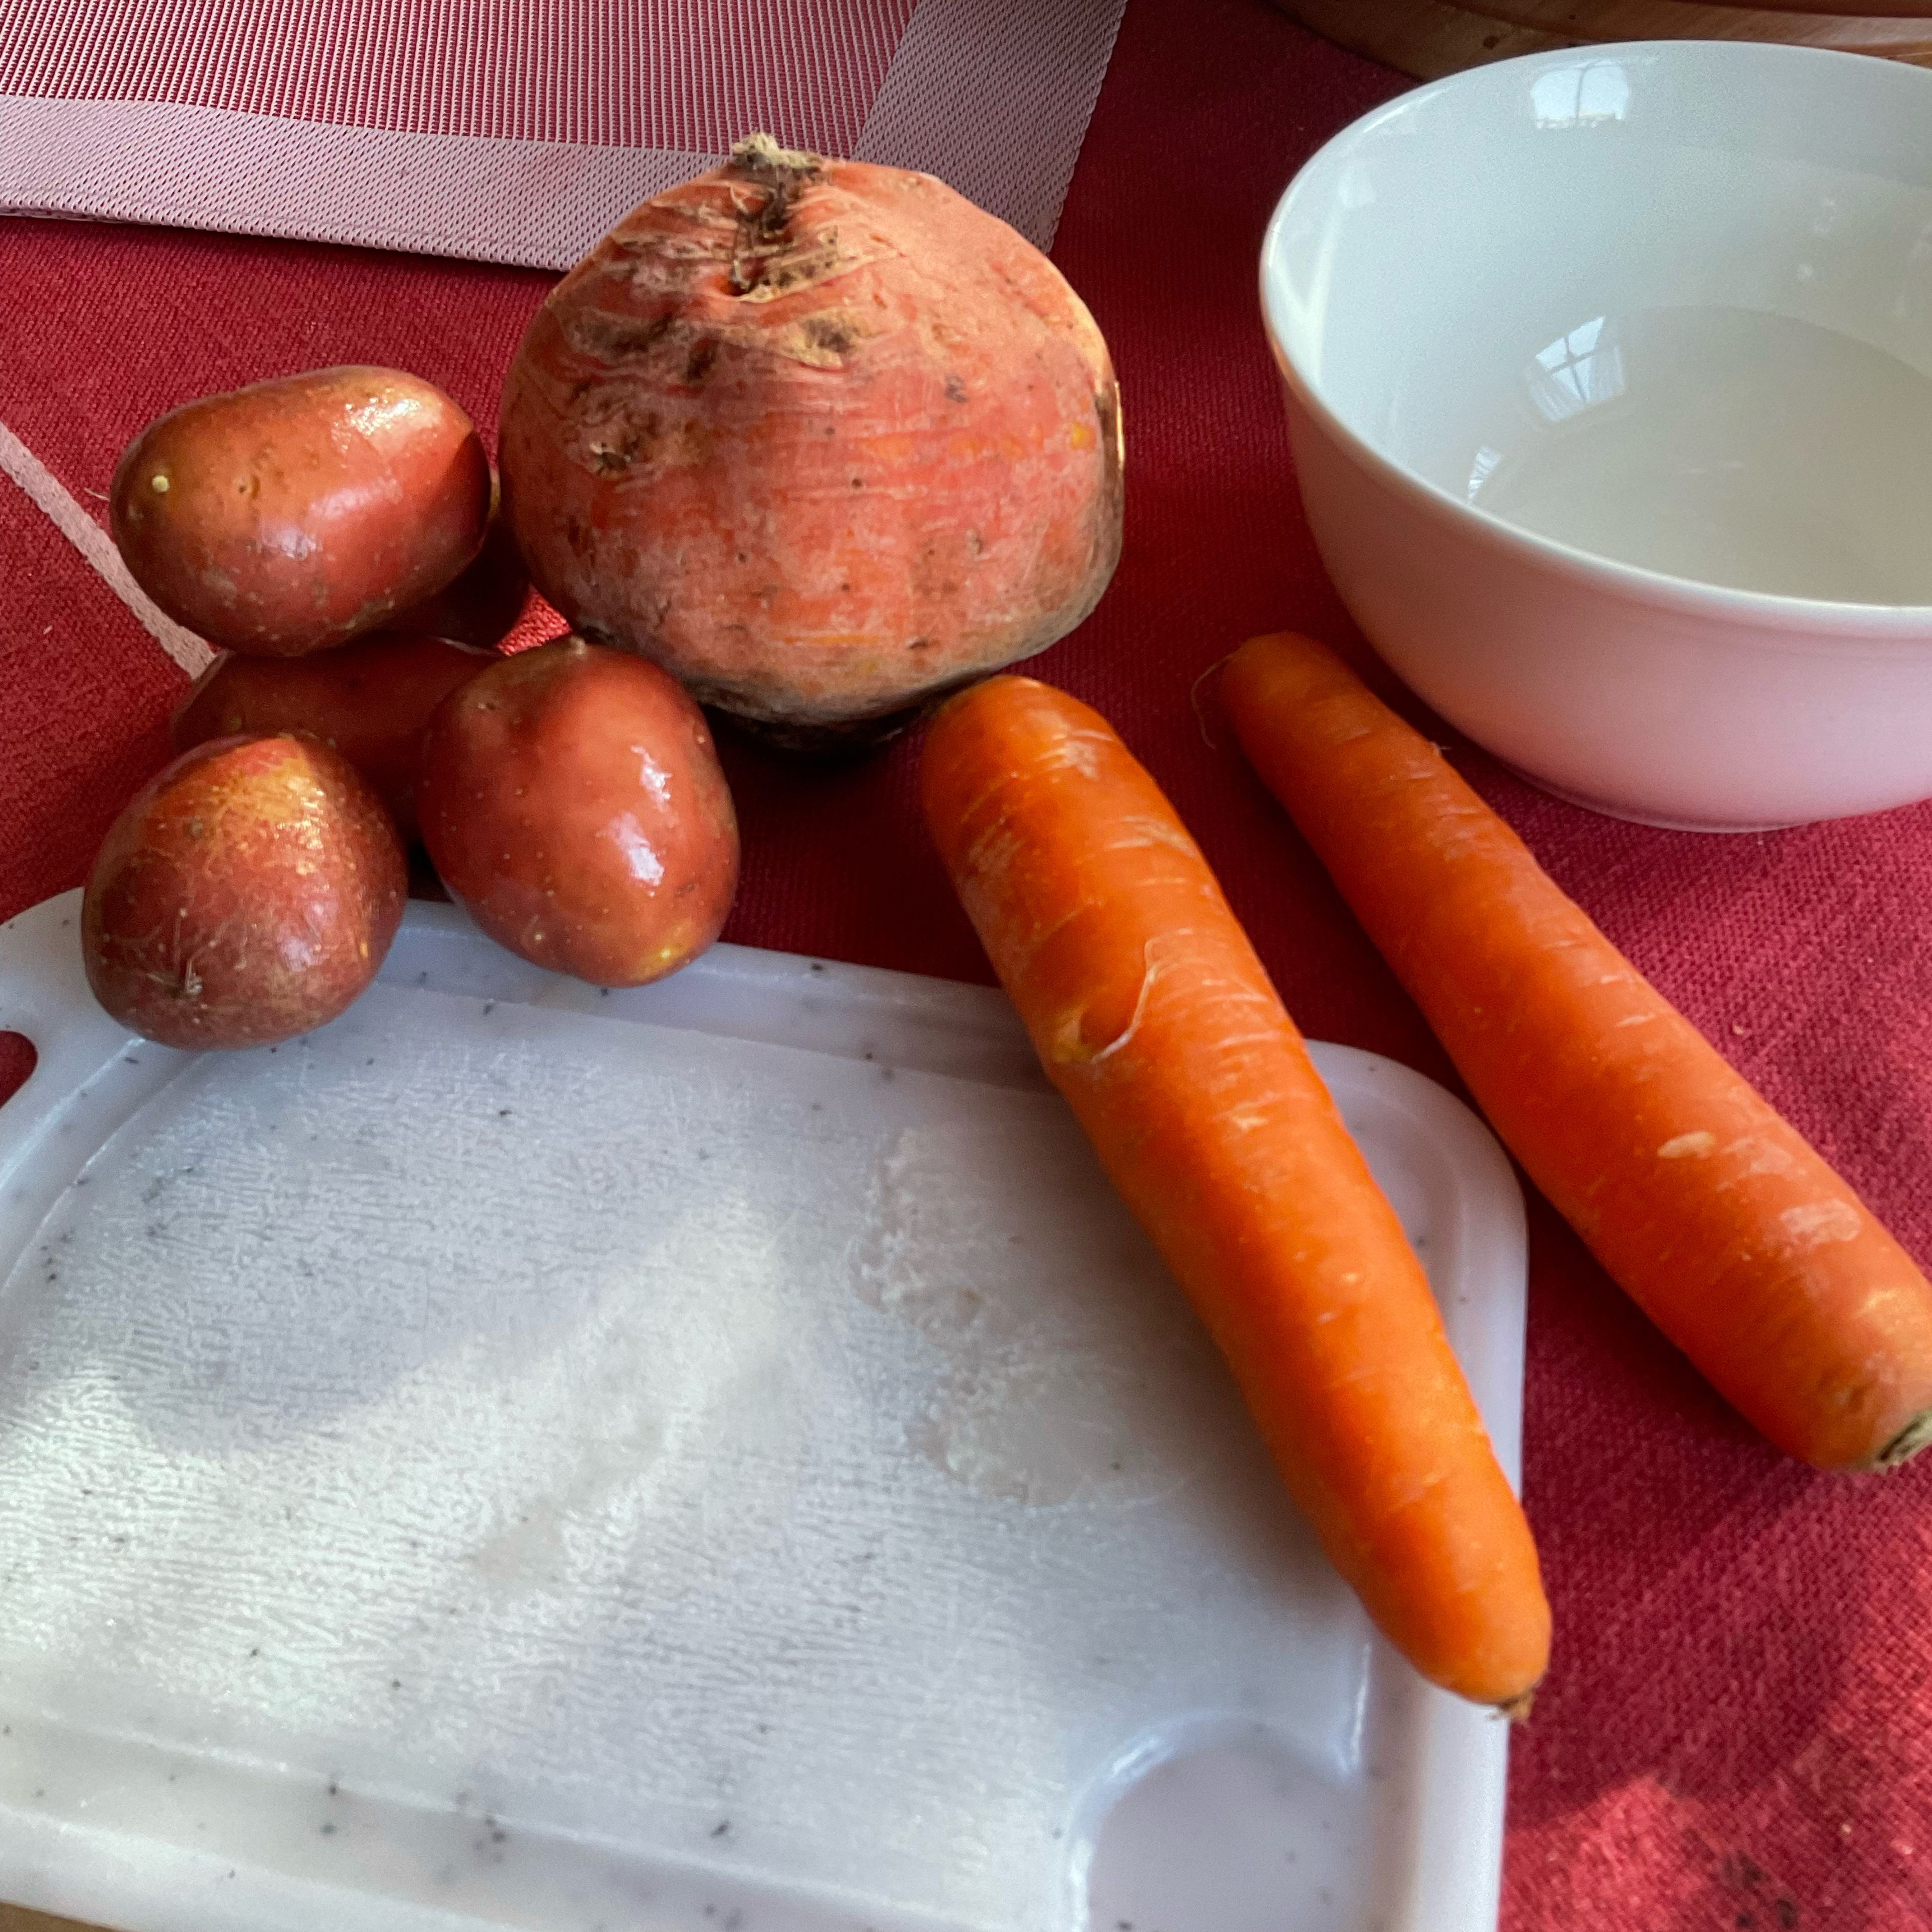 Als Gemüsebett schäle und würfle ich zwei Karotten, eine halbe Rübe (z.B.Teltower) und vier Kartoffeln.